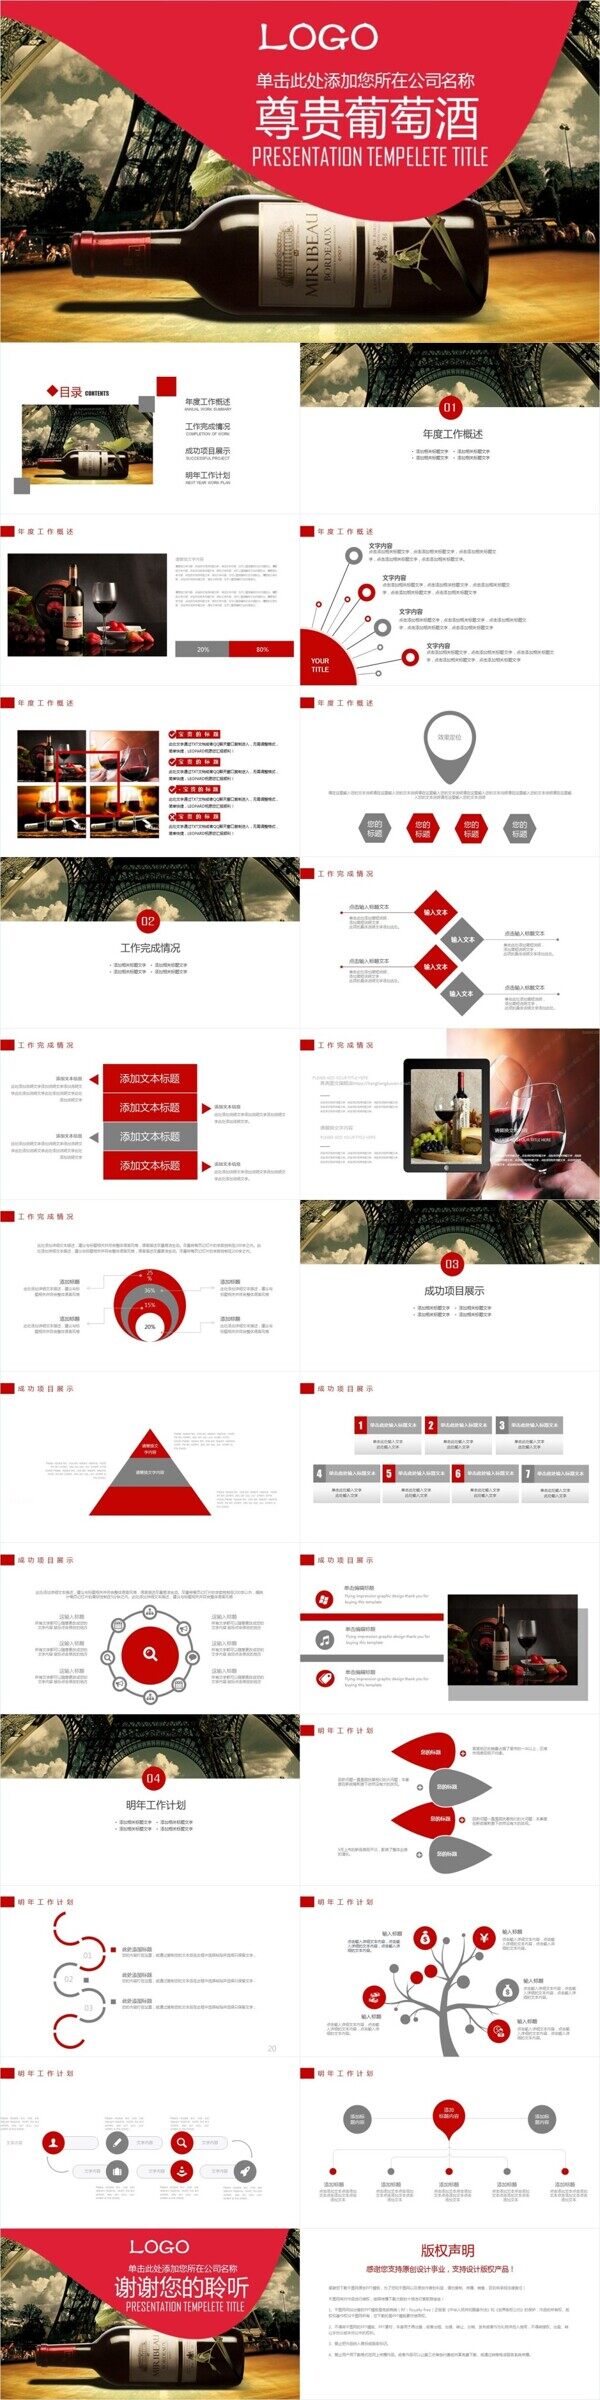 尊贵葡萄酒宣传介绍策划宣传PPT模板